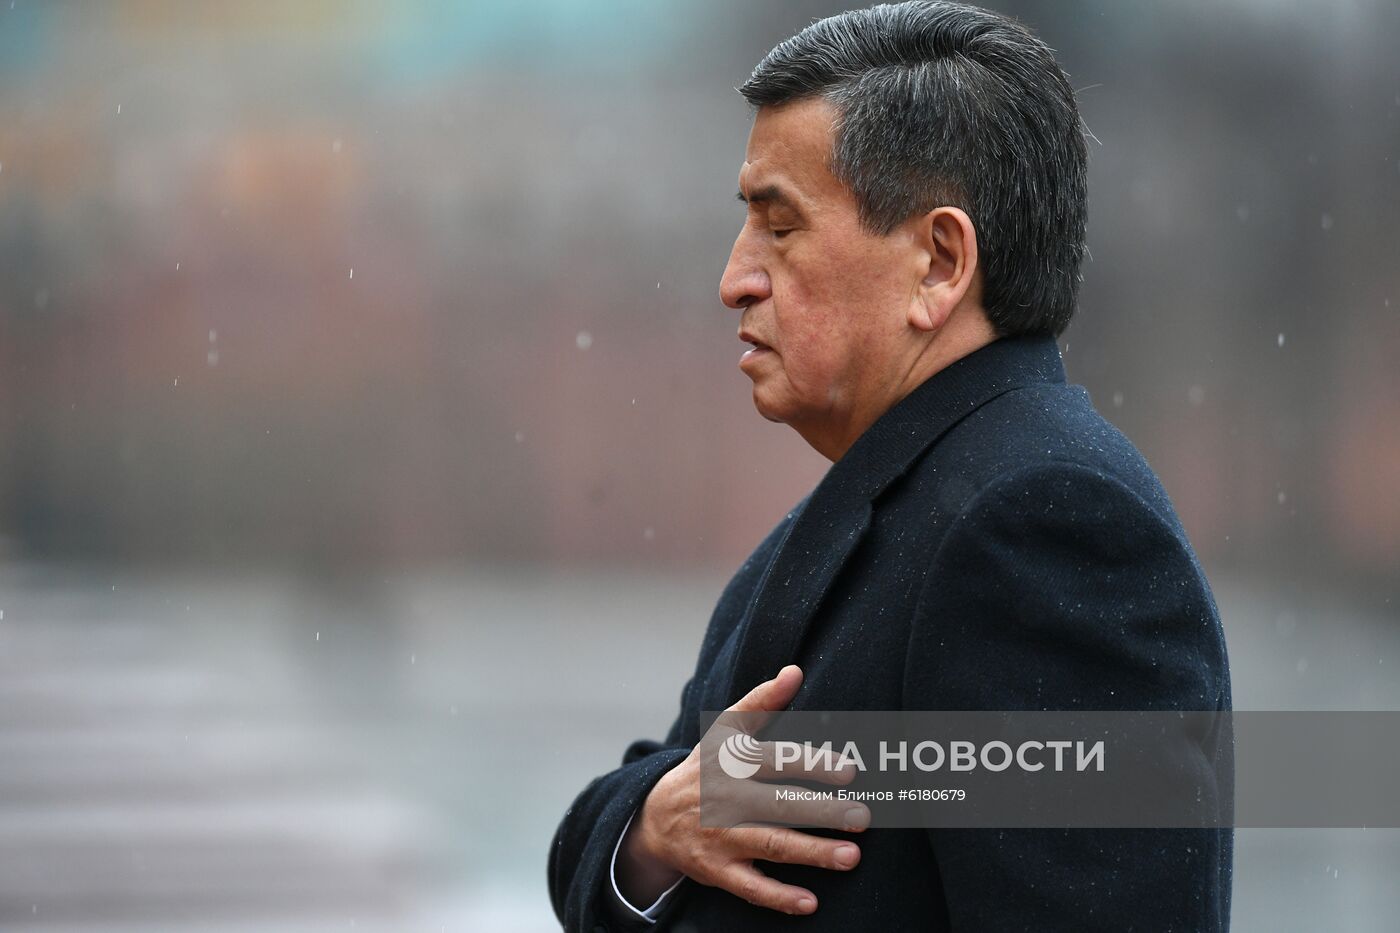 Президент Киргизии С. Жээнбеков возложил цветы к Могиле Неизвестного Солдата